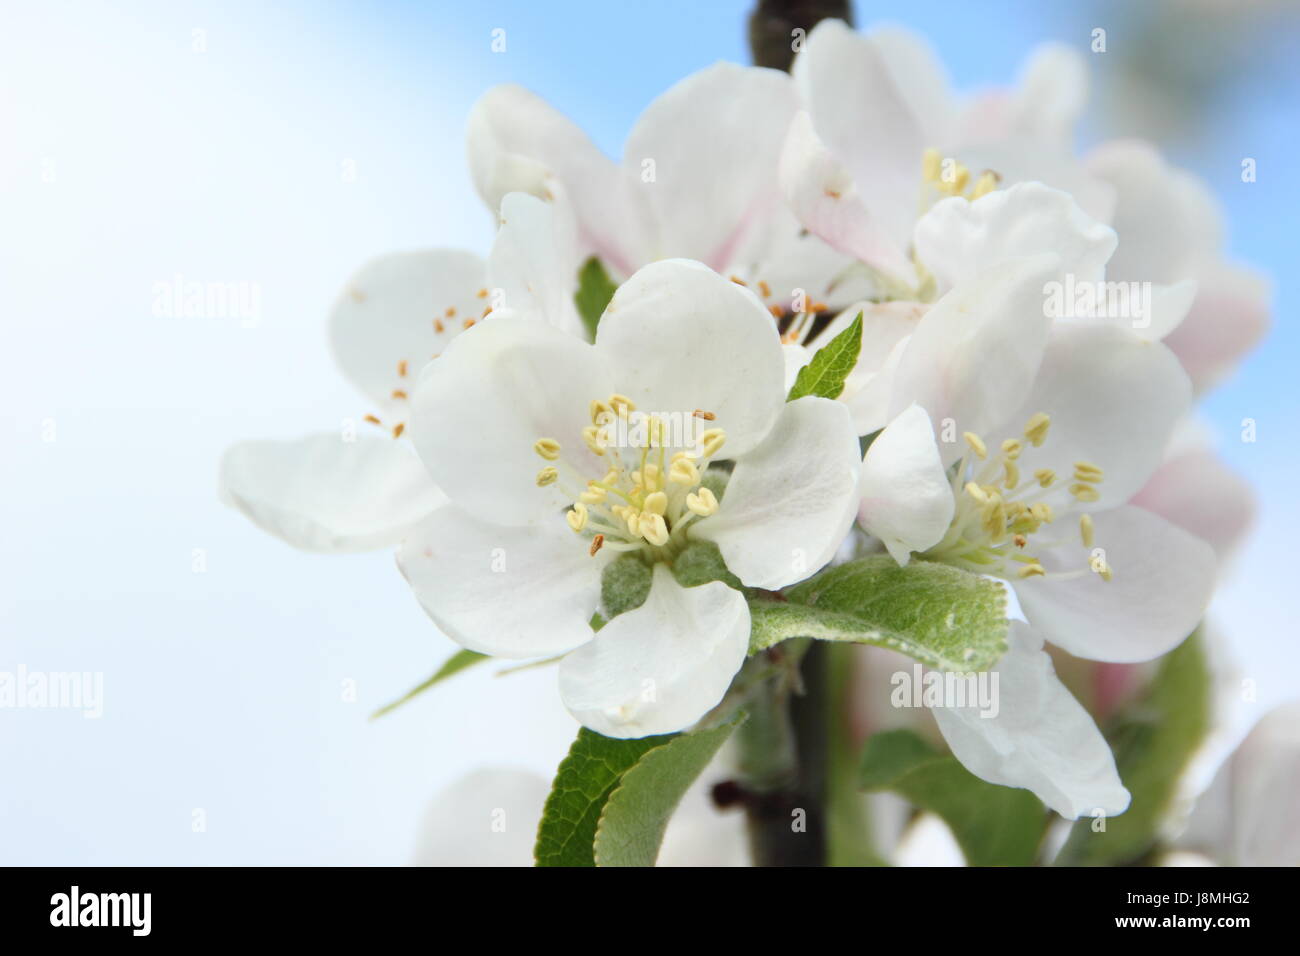 Malus domestica 'scoperta' albero della mela in piena fioritura in un frutteto in inglese su una soleggiata giornata di primavera, England, Regno Unito Foto Stock